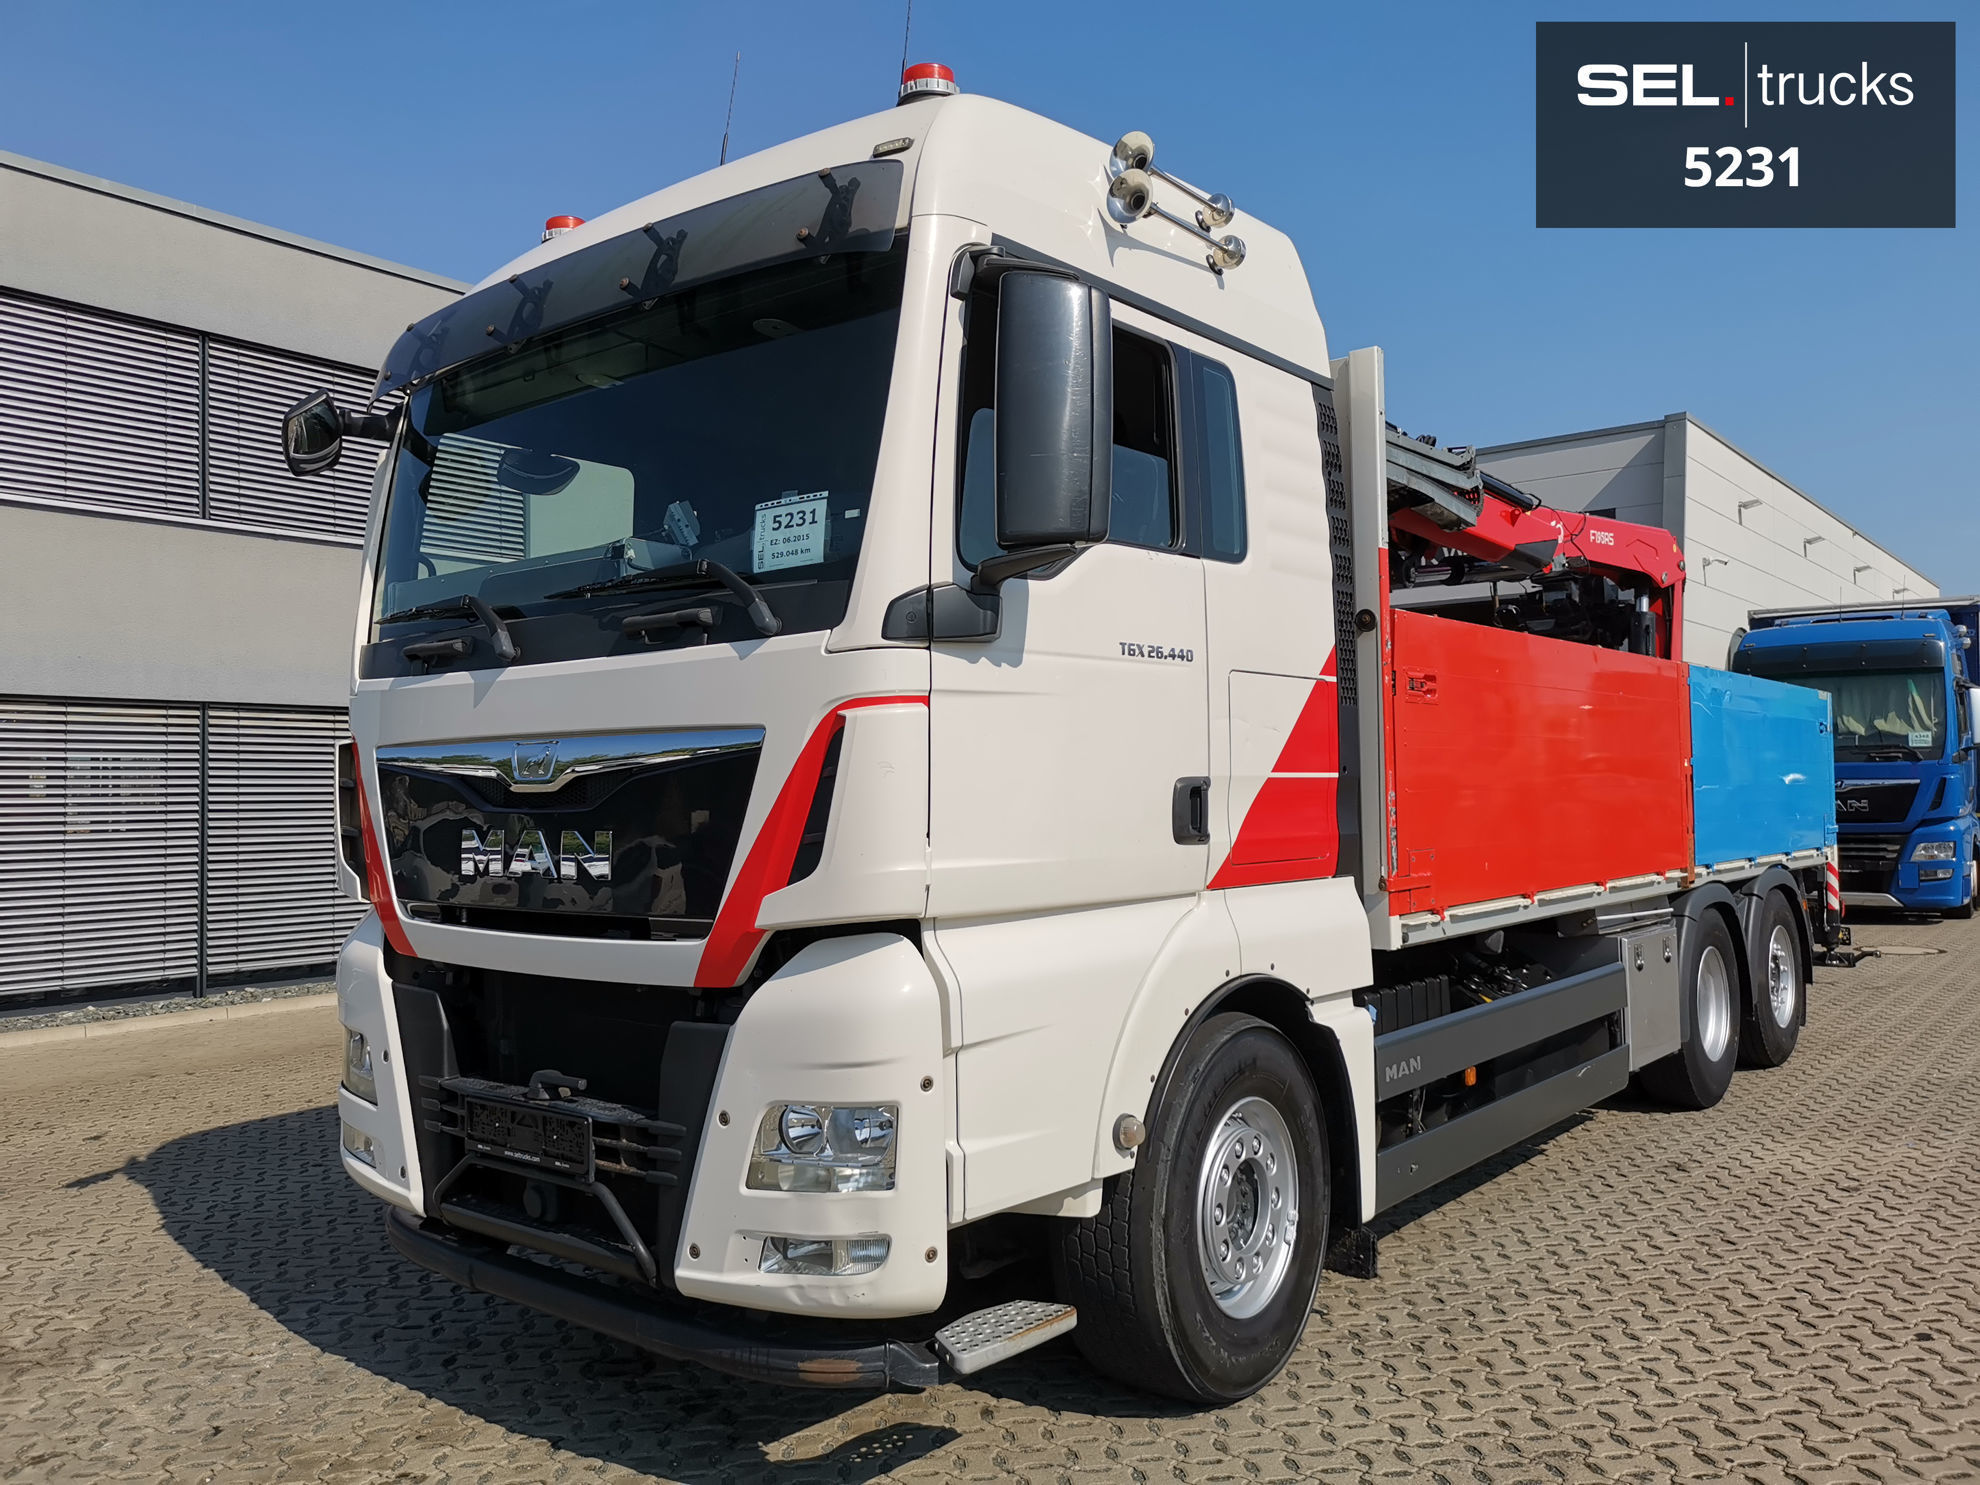 MAN TGX 26.440 6X2-4 BL Truck. SEL Trucks. Used trucks from Germany. Fast &  easy export service!